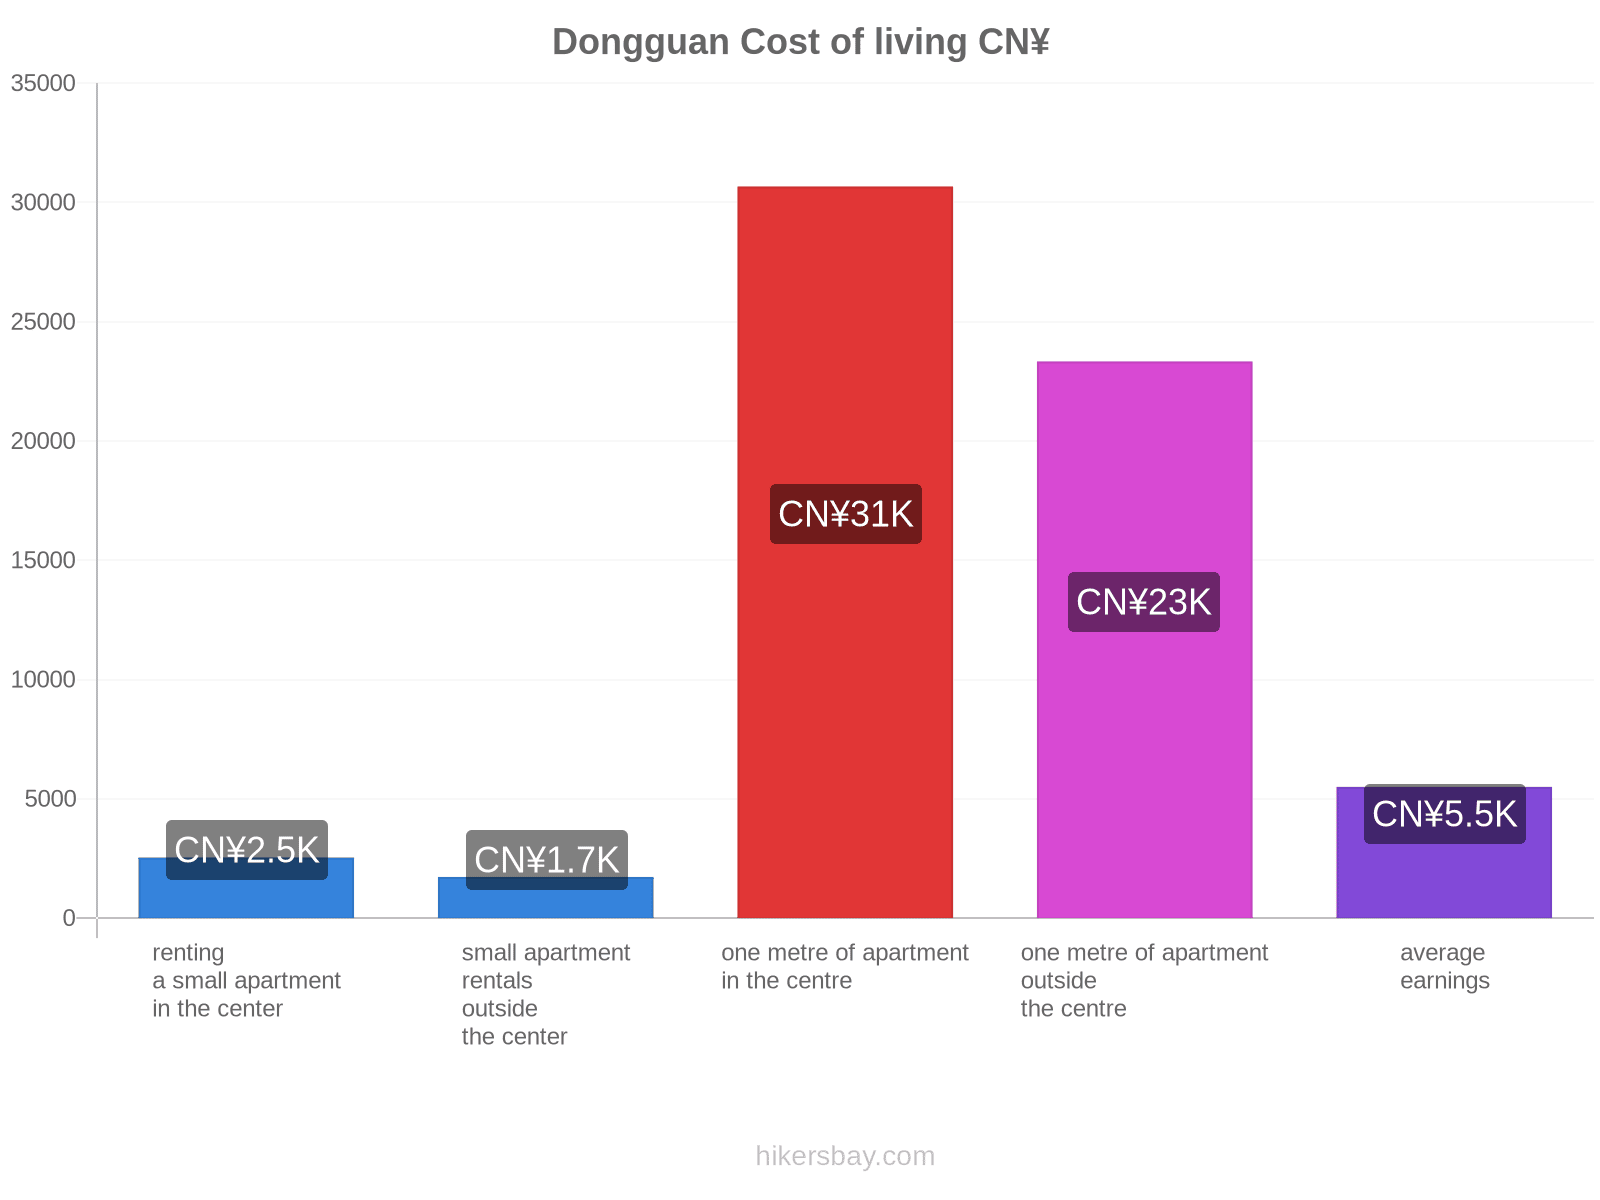 Dongguan cost of living hikersbay.com